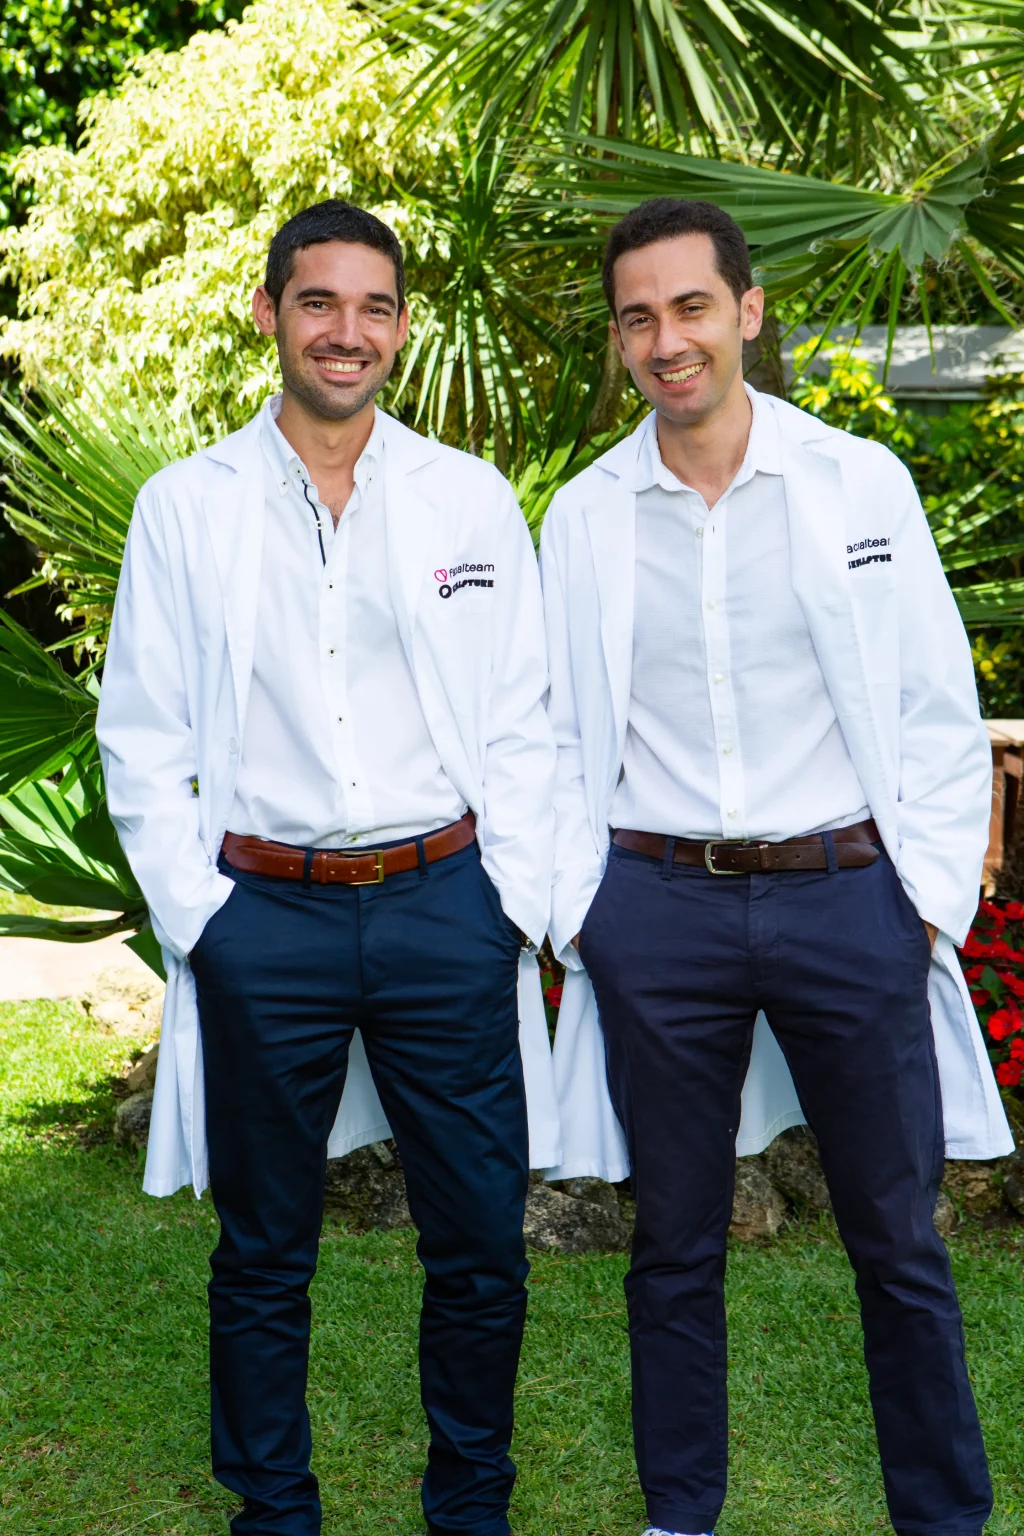 Los profesionales Dr. Fermín Capitán y Dr. Miguel Perceval de Facialteam Research & Education